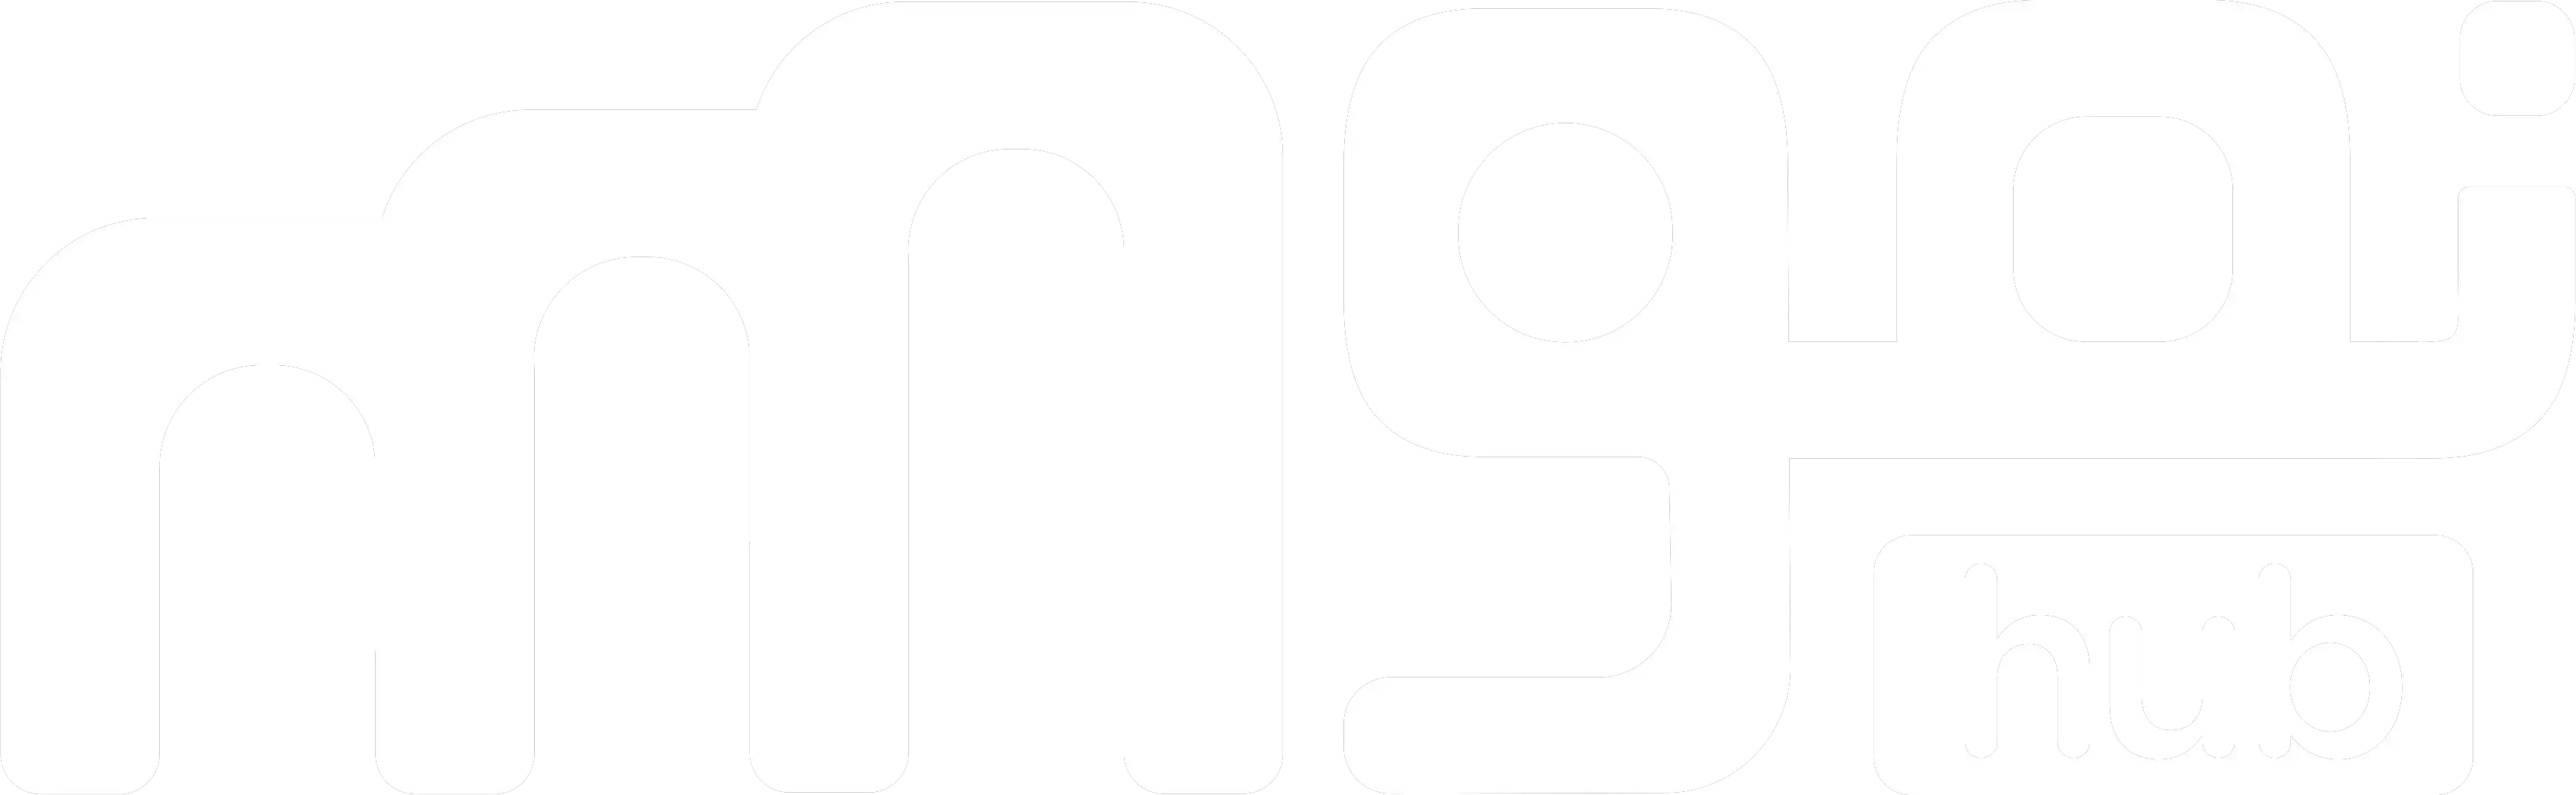 Nmohub logo